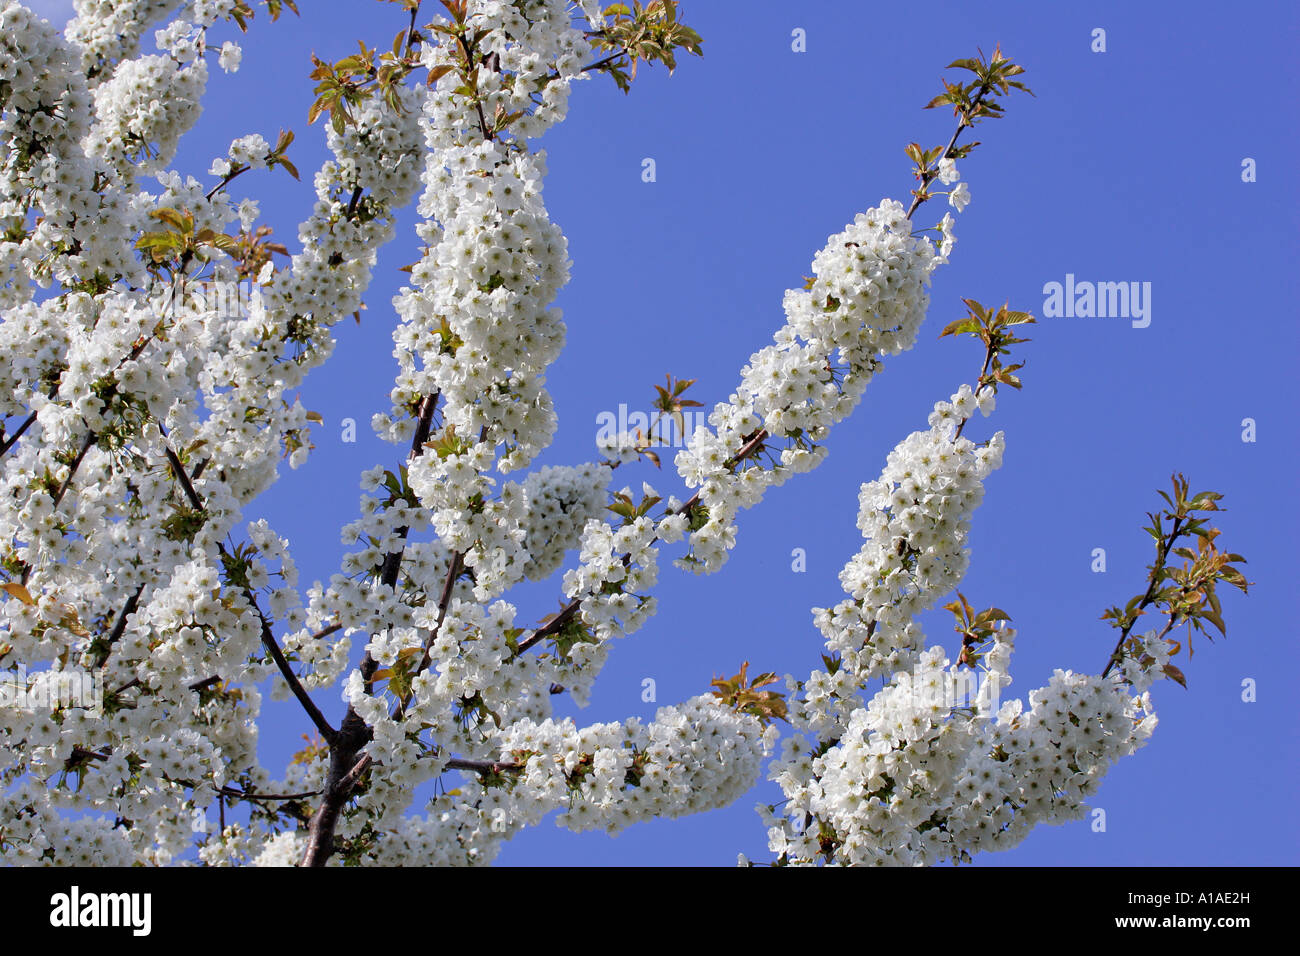 Flowering Cherrytree (Prunus avium) Stock Photo